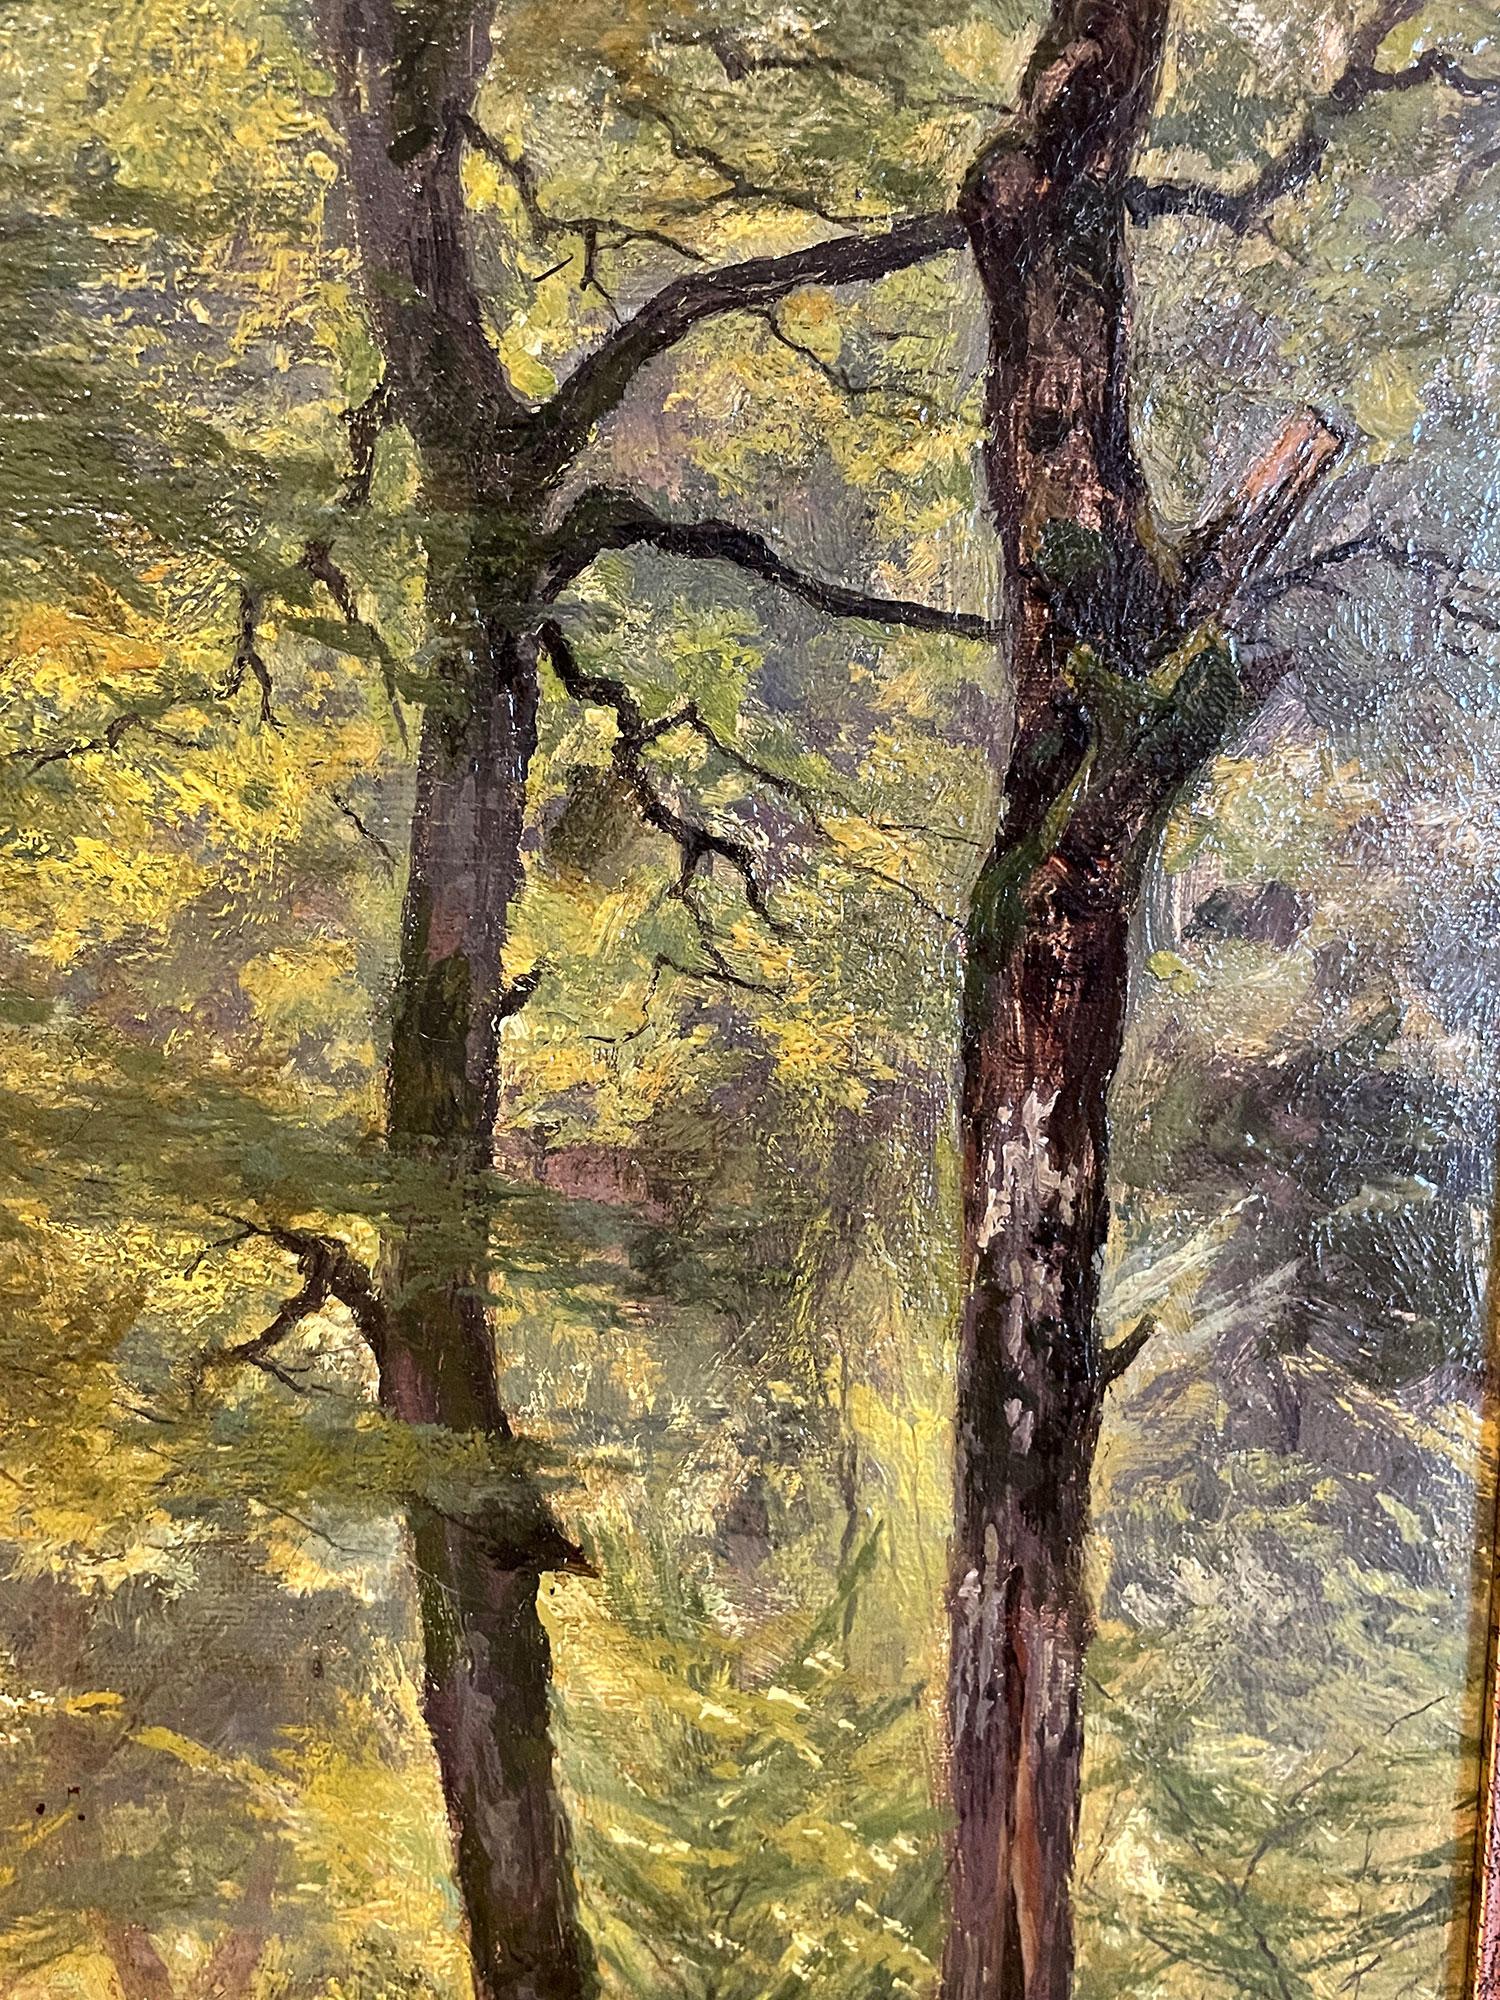 German Roe Deer in the Woods Painting by Arthur Thiele